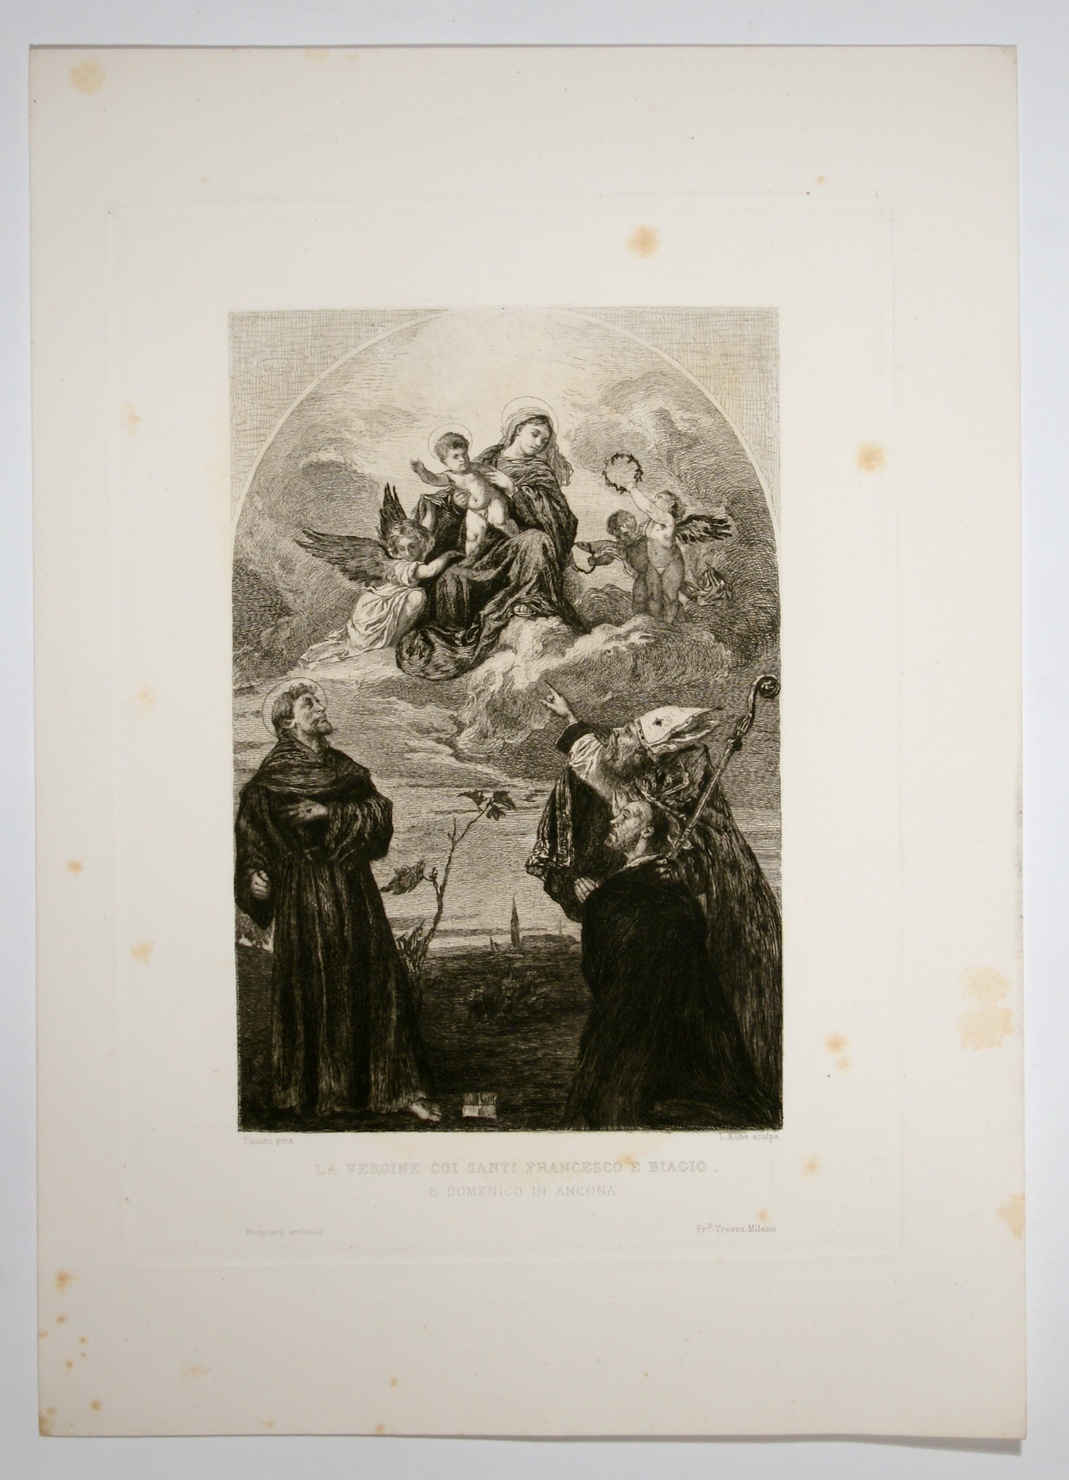 La Vergine coi santi, Madonna con Bambino e Santi (stampa) di Vecellio Tiziano, Kuhn Ludwig (sec. XIX)